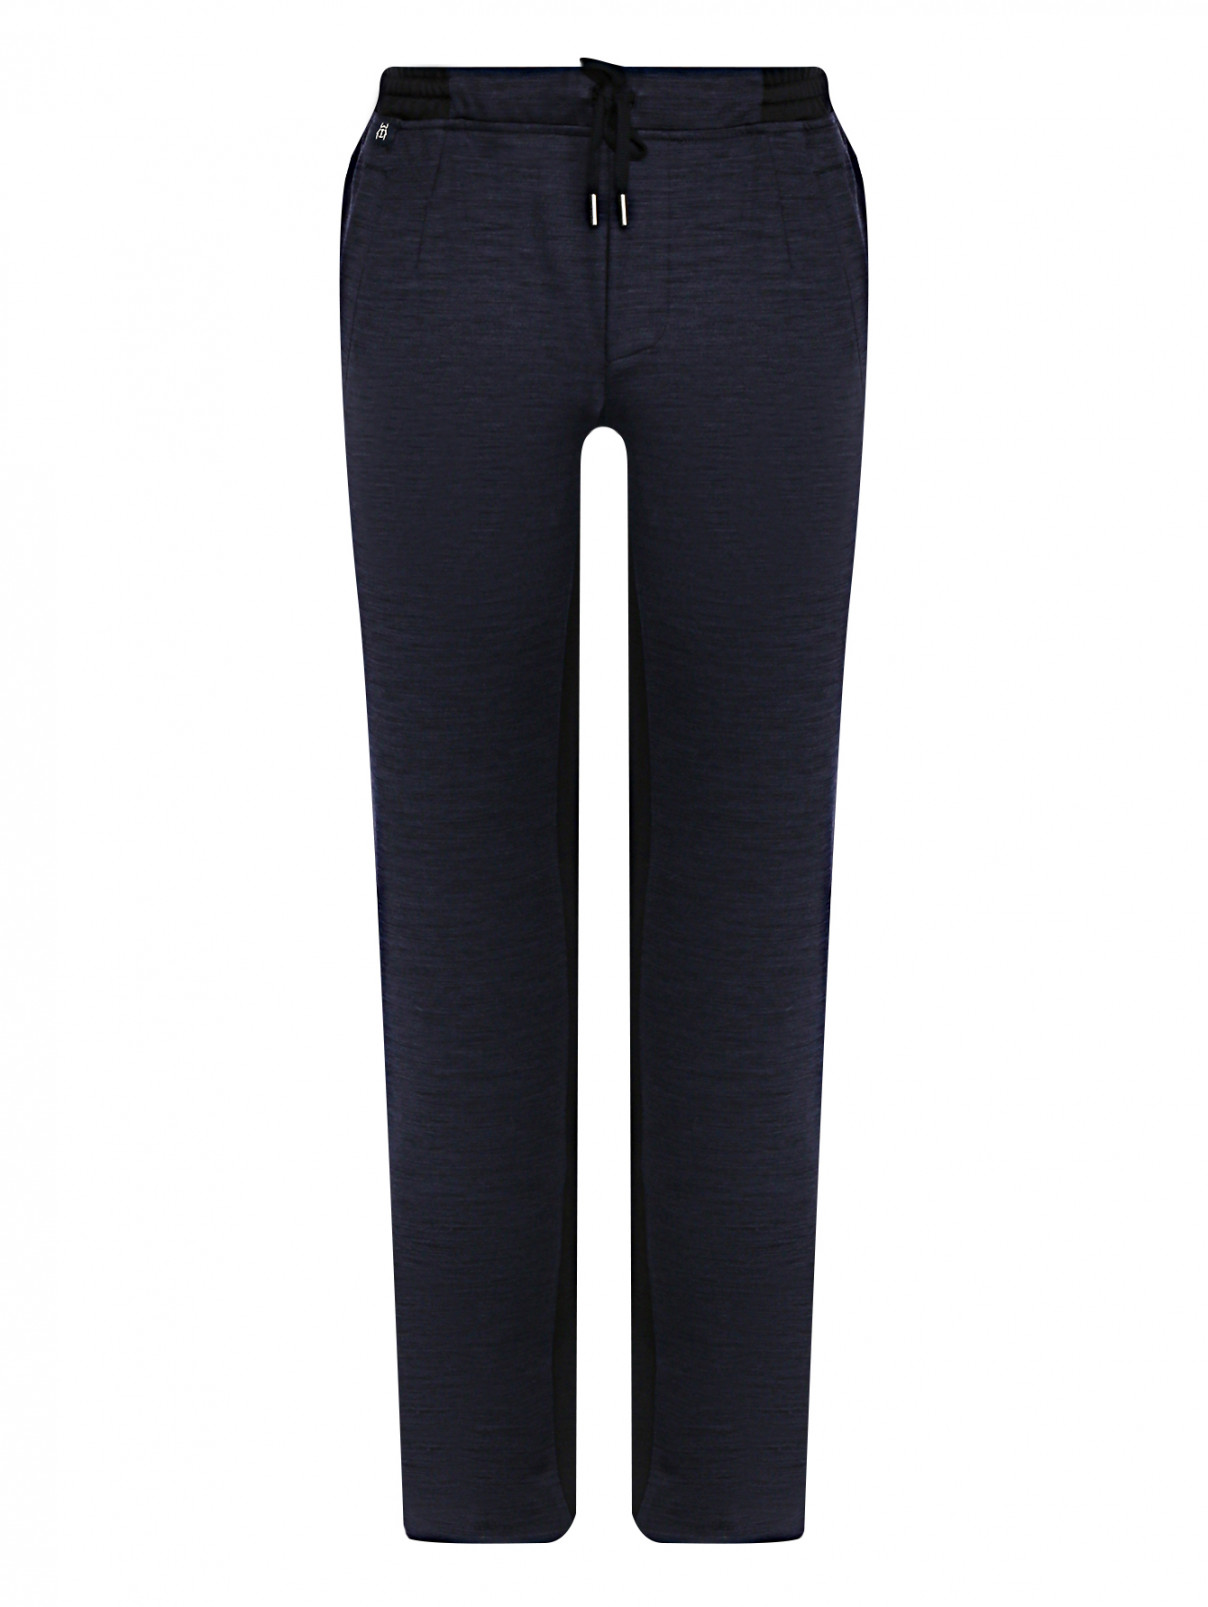 Трикотажные брюки на резинке Capobianco  –  Общий вид  – Цвет:  Синий